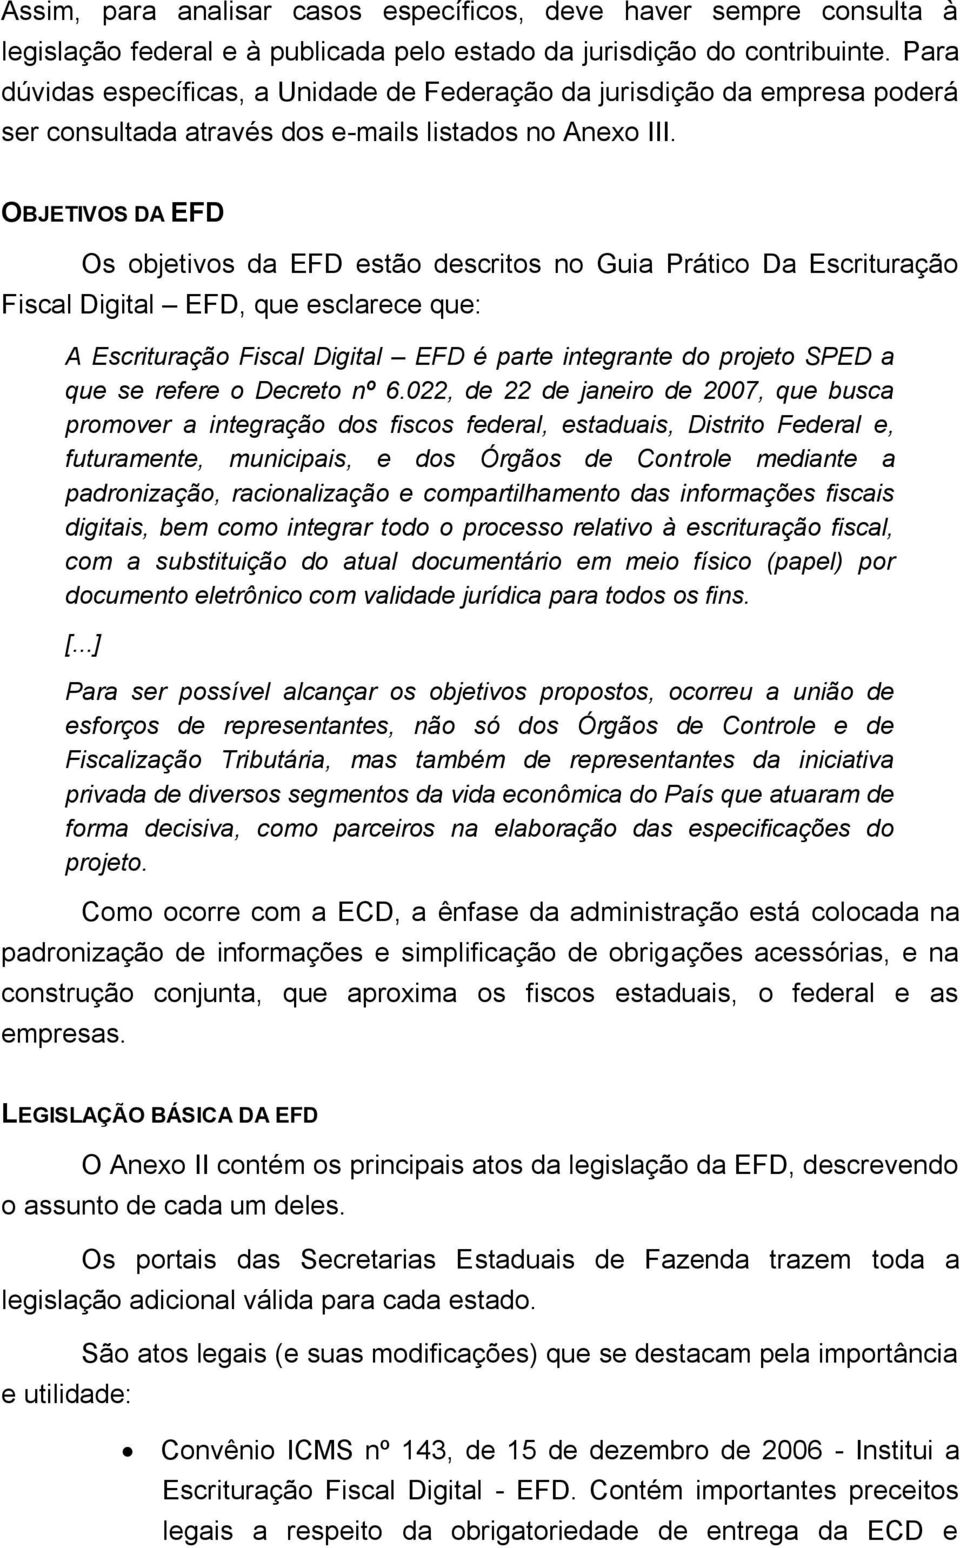 OBJETIVOS DA EFD Os objetivos da EFD estão descritos no Guia Prático Da Escrituração Fiscal Digital EFD, que esclarece que: A Escrituração Fiscal Digital EFD é parte integrante do projeto SPED a que